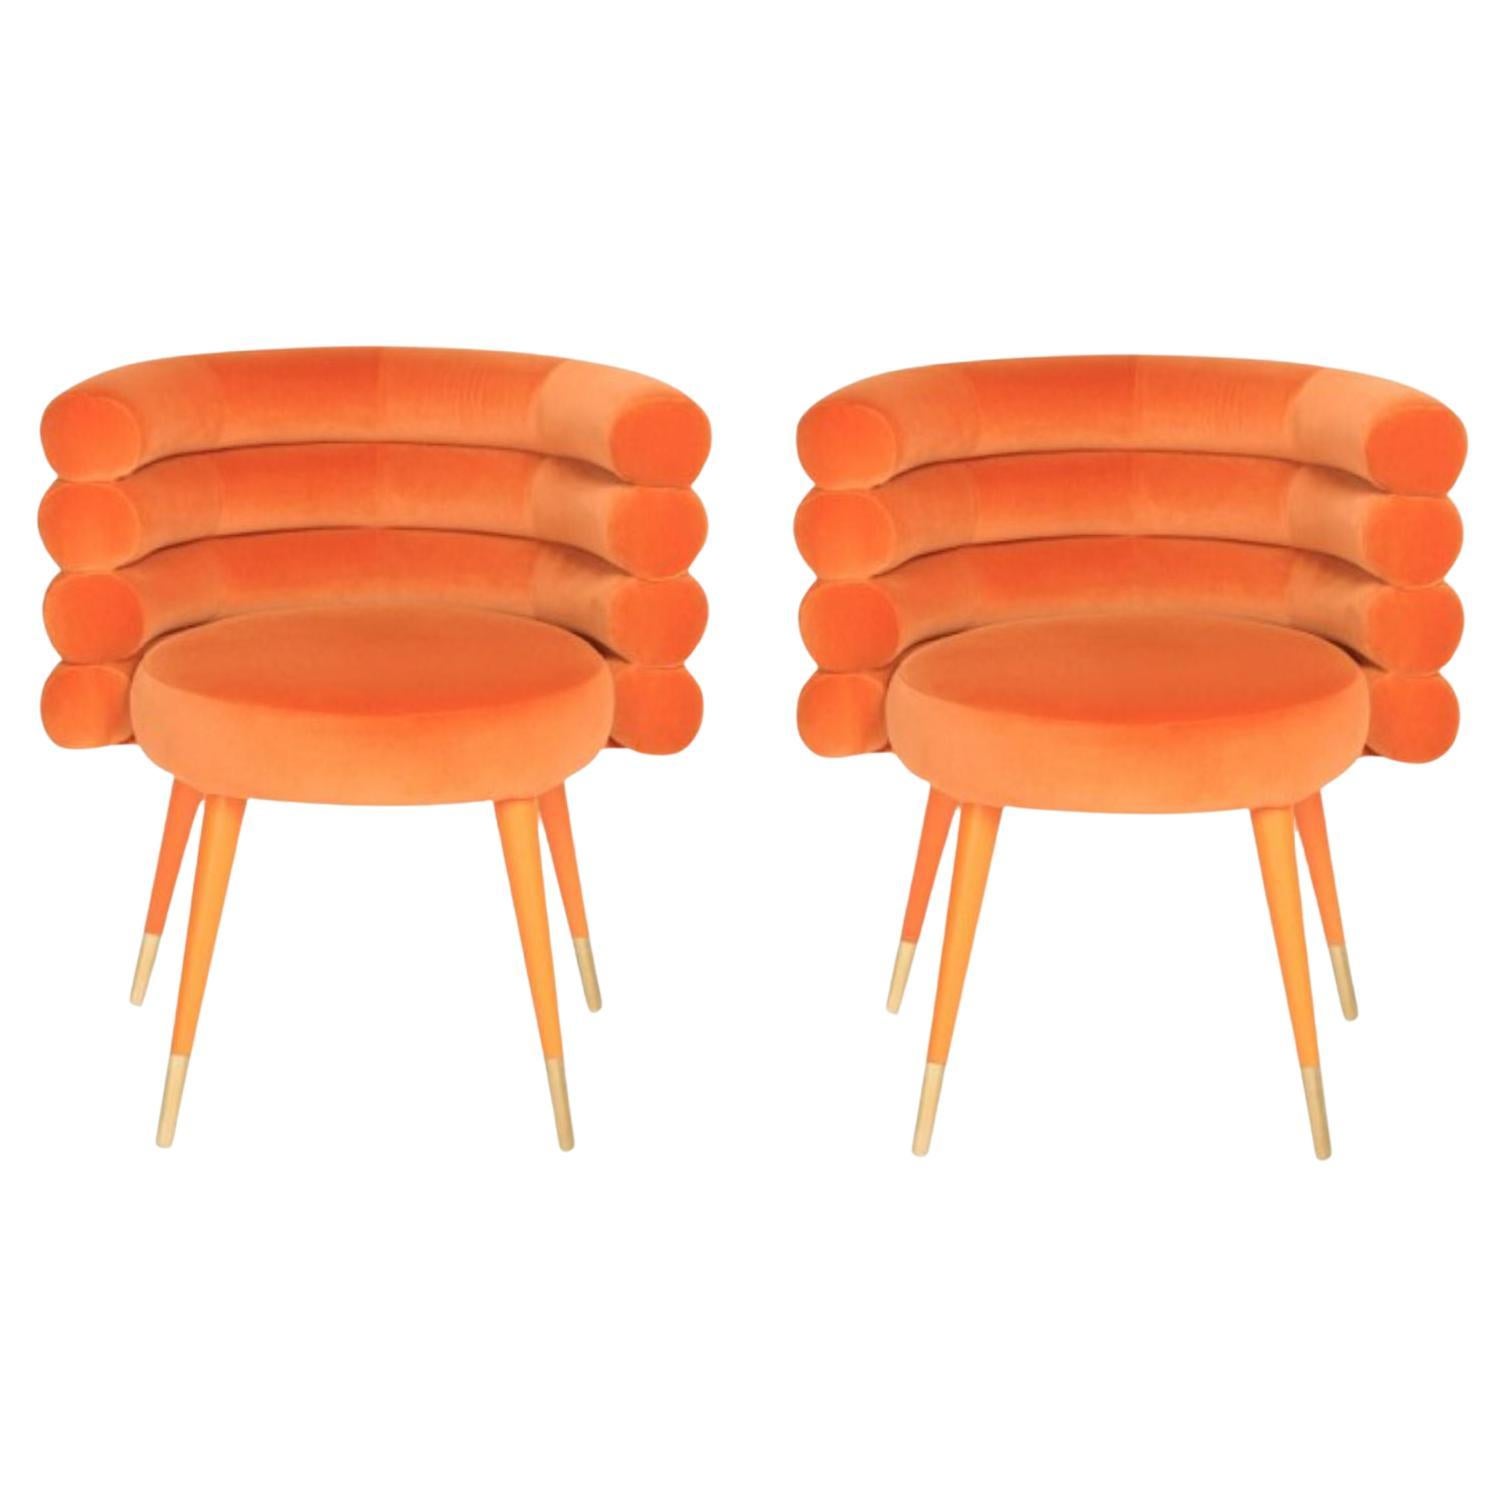 Set of 2 Orange Marshmallow Dining Chairs, Royal Stranger